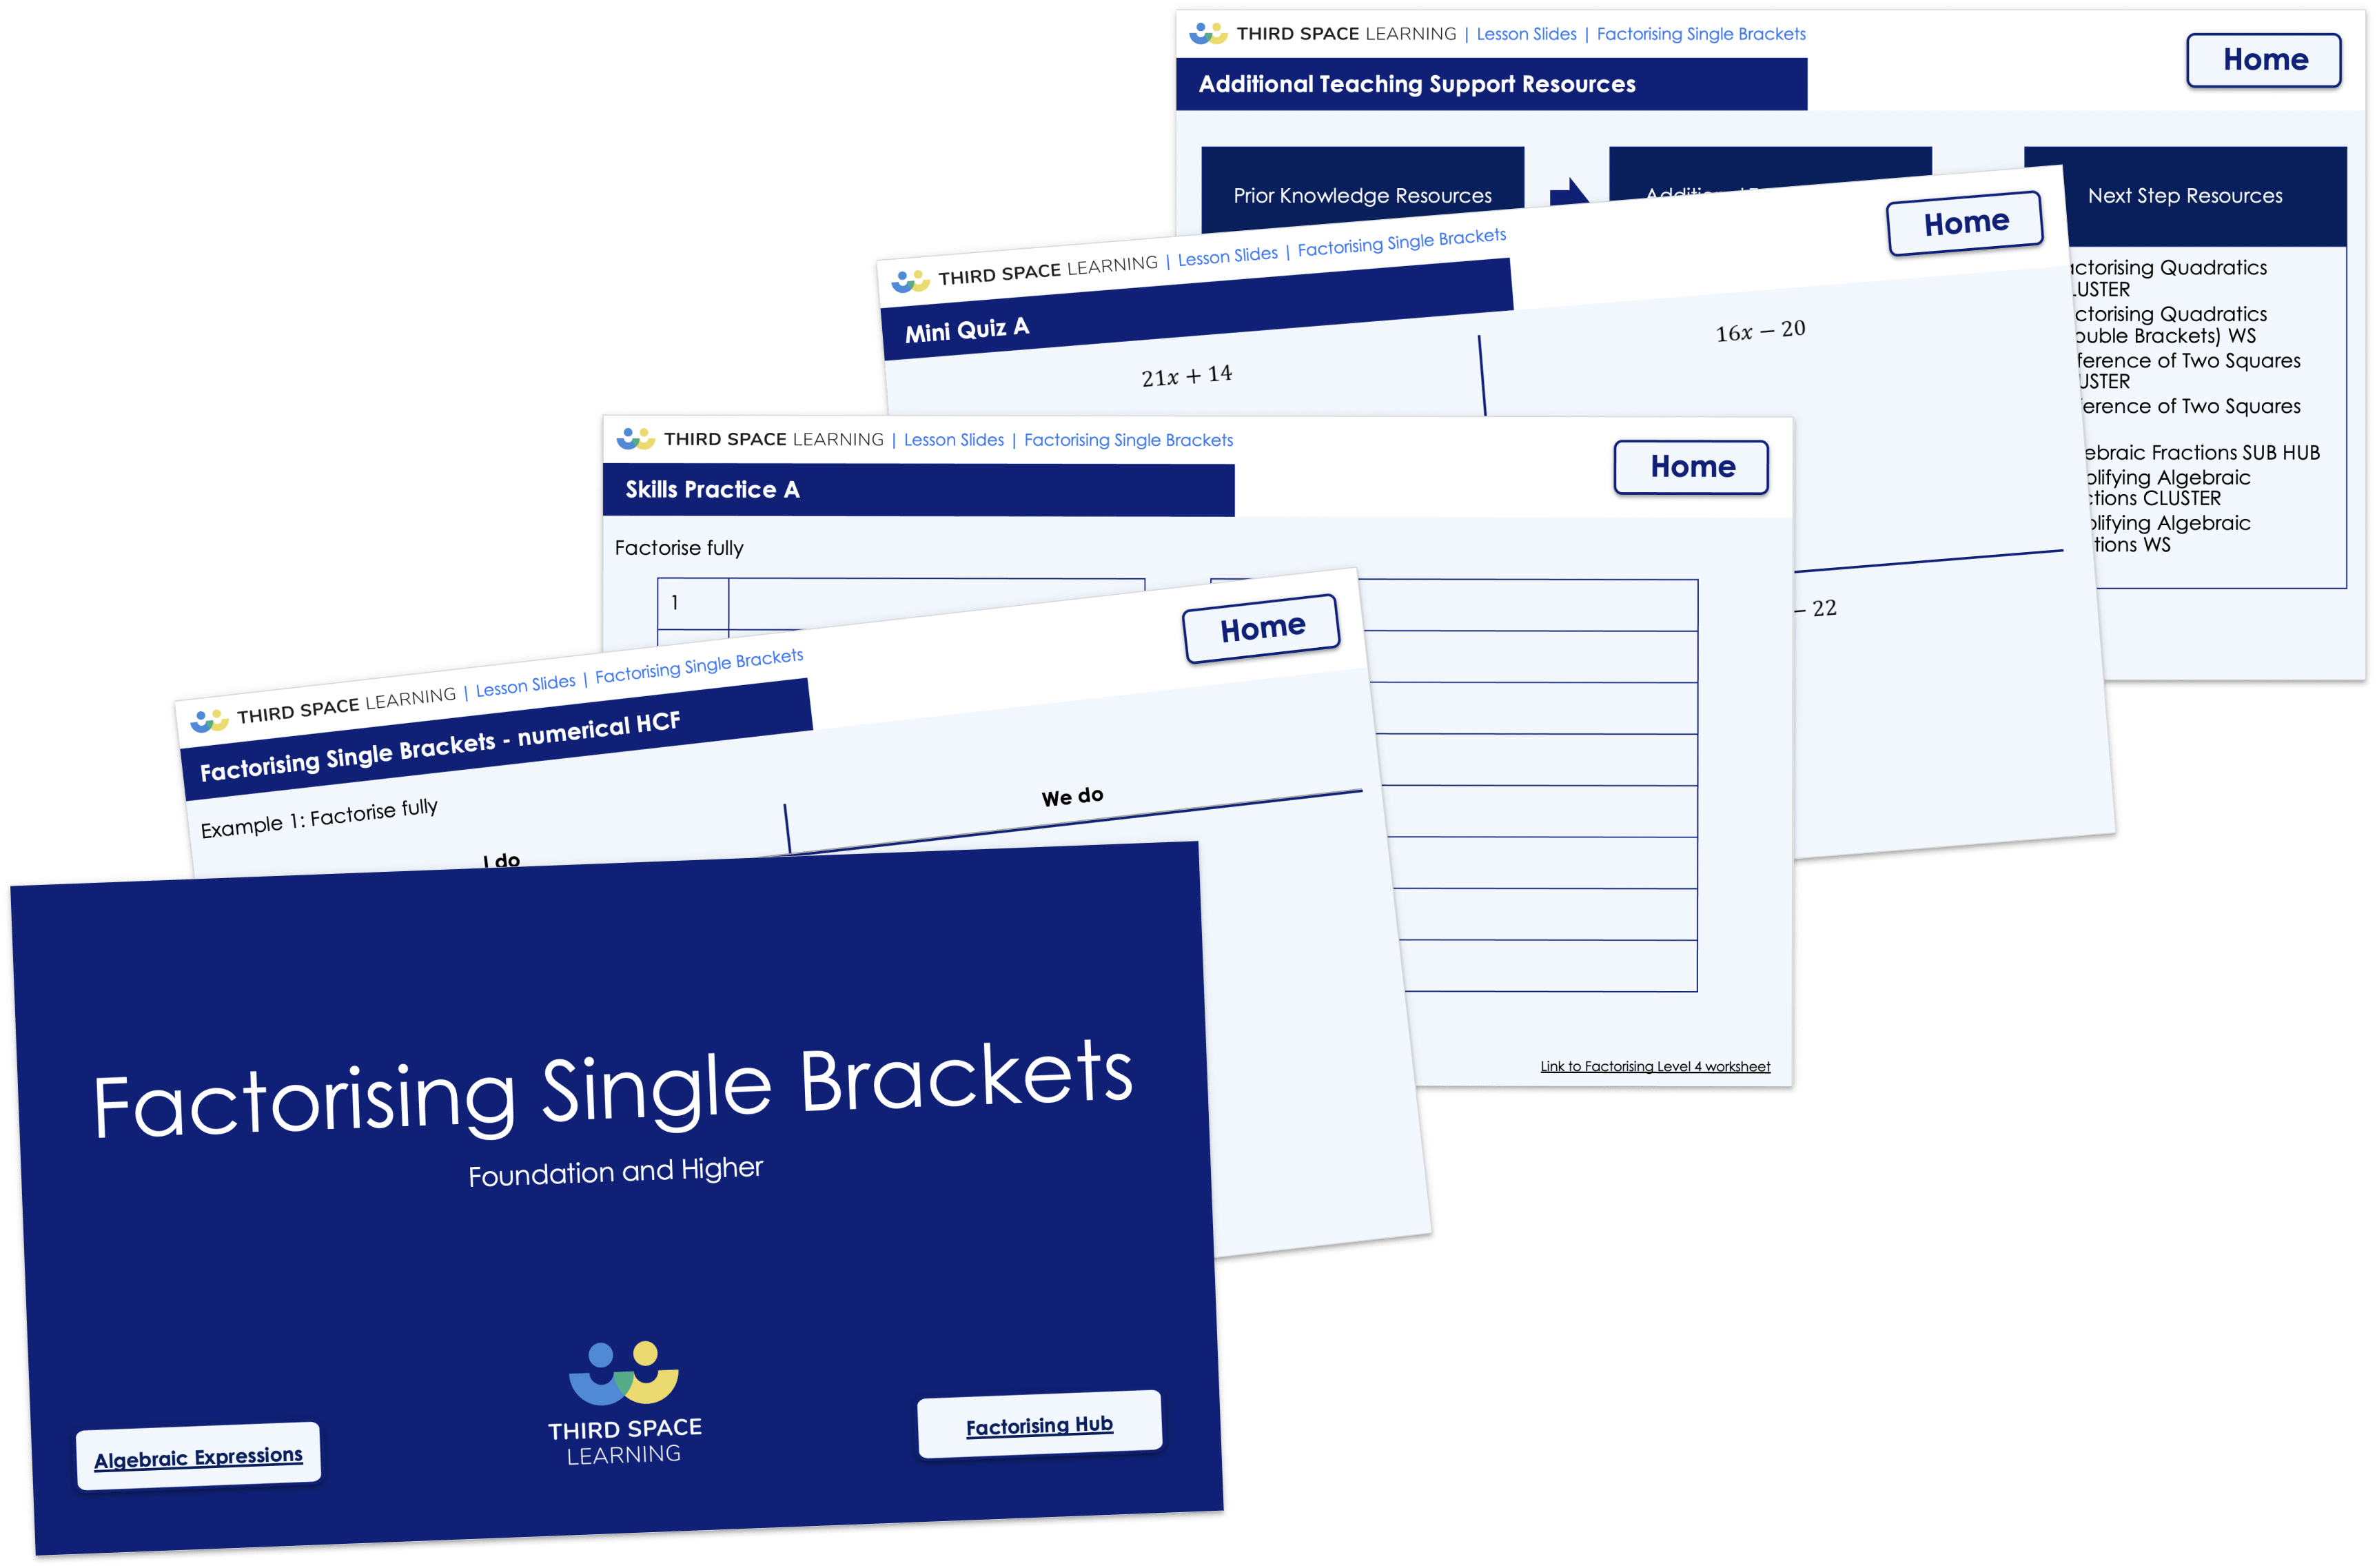 Factorising Single Brackets Lesson Slides